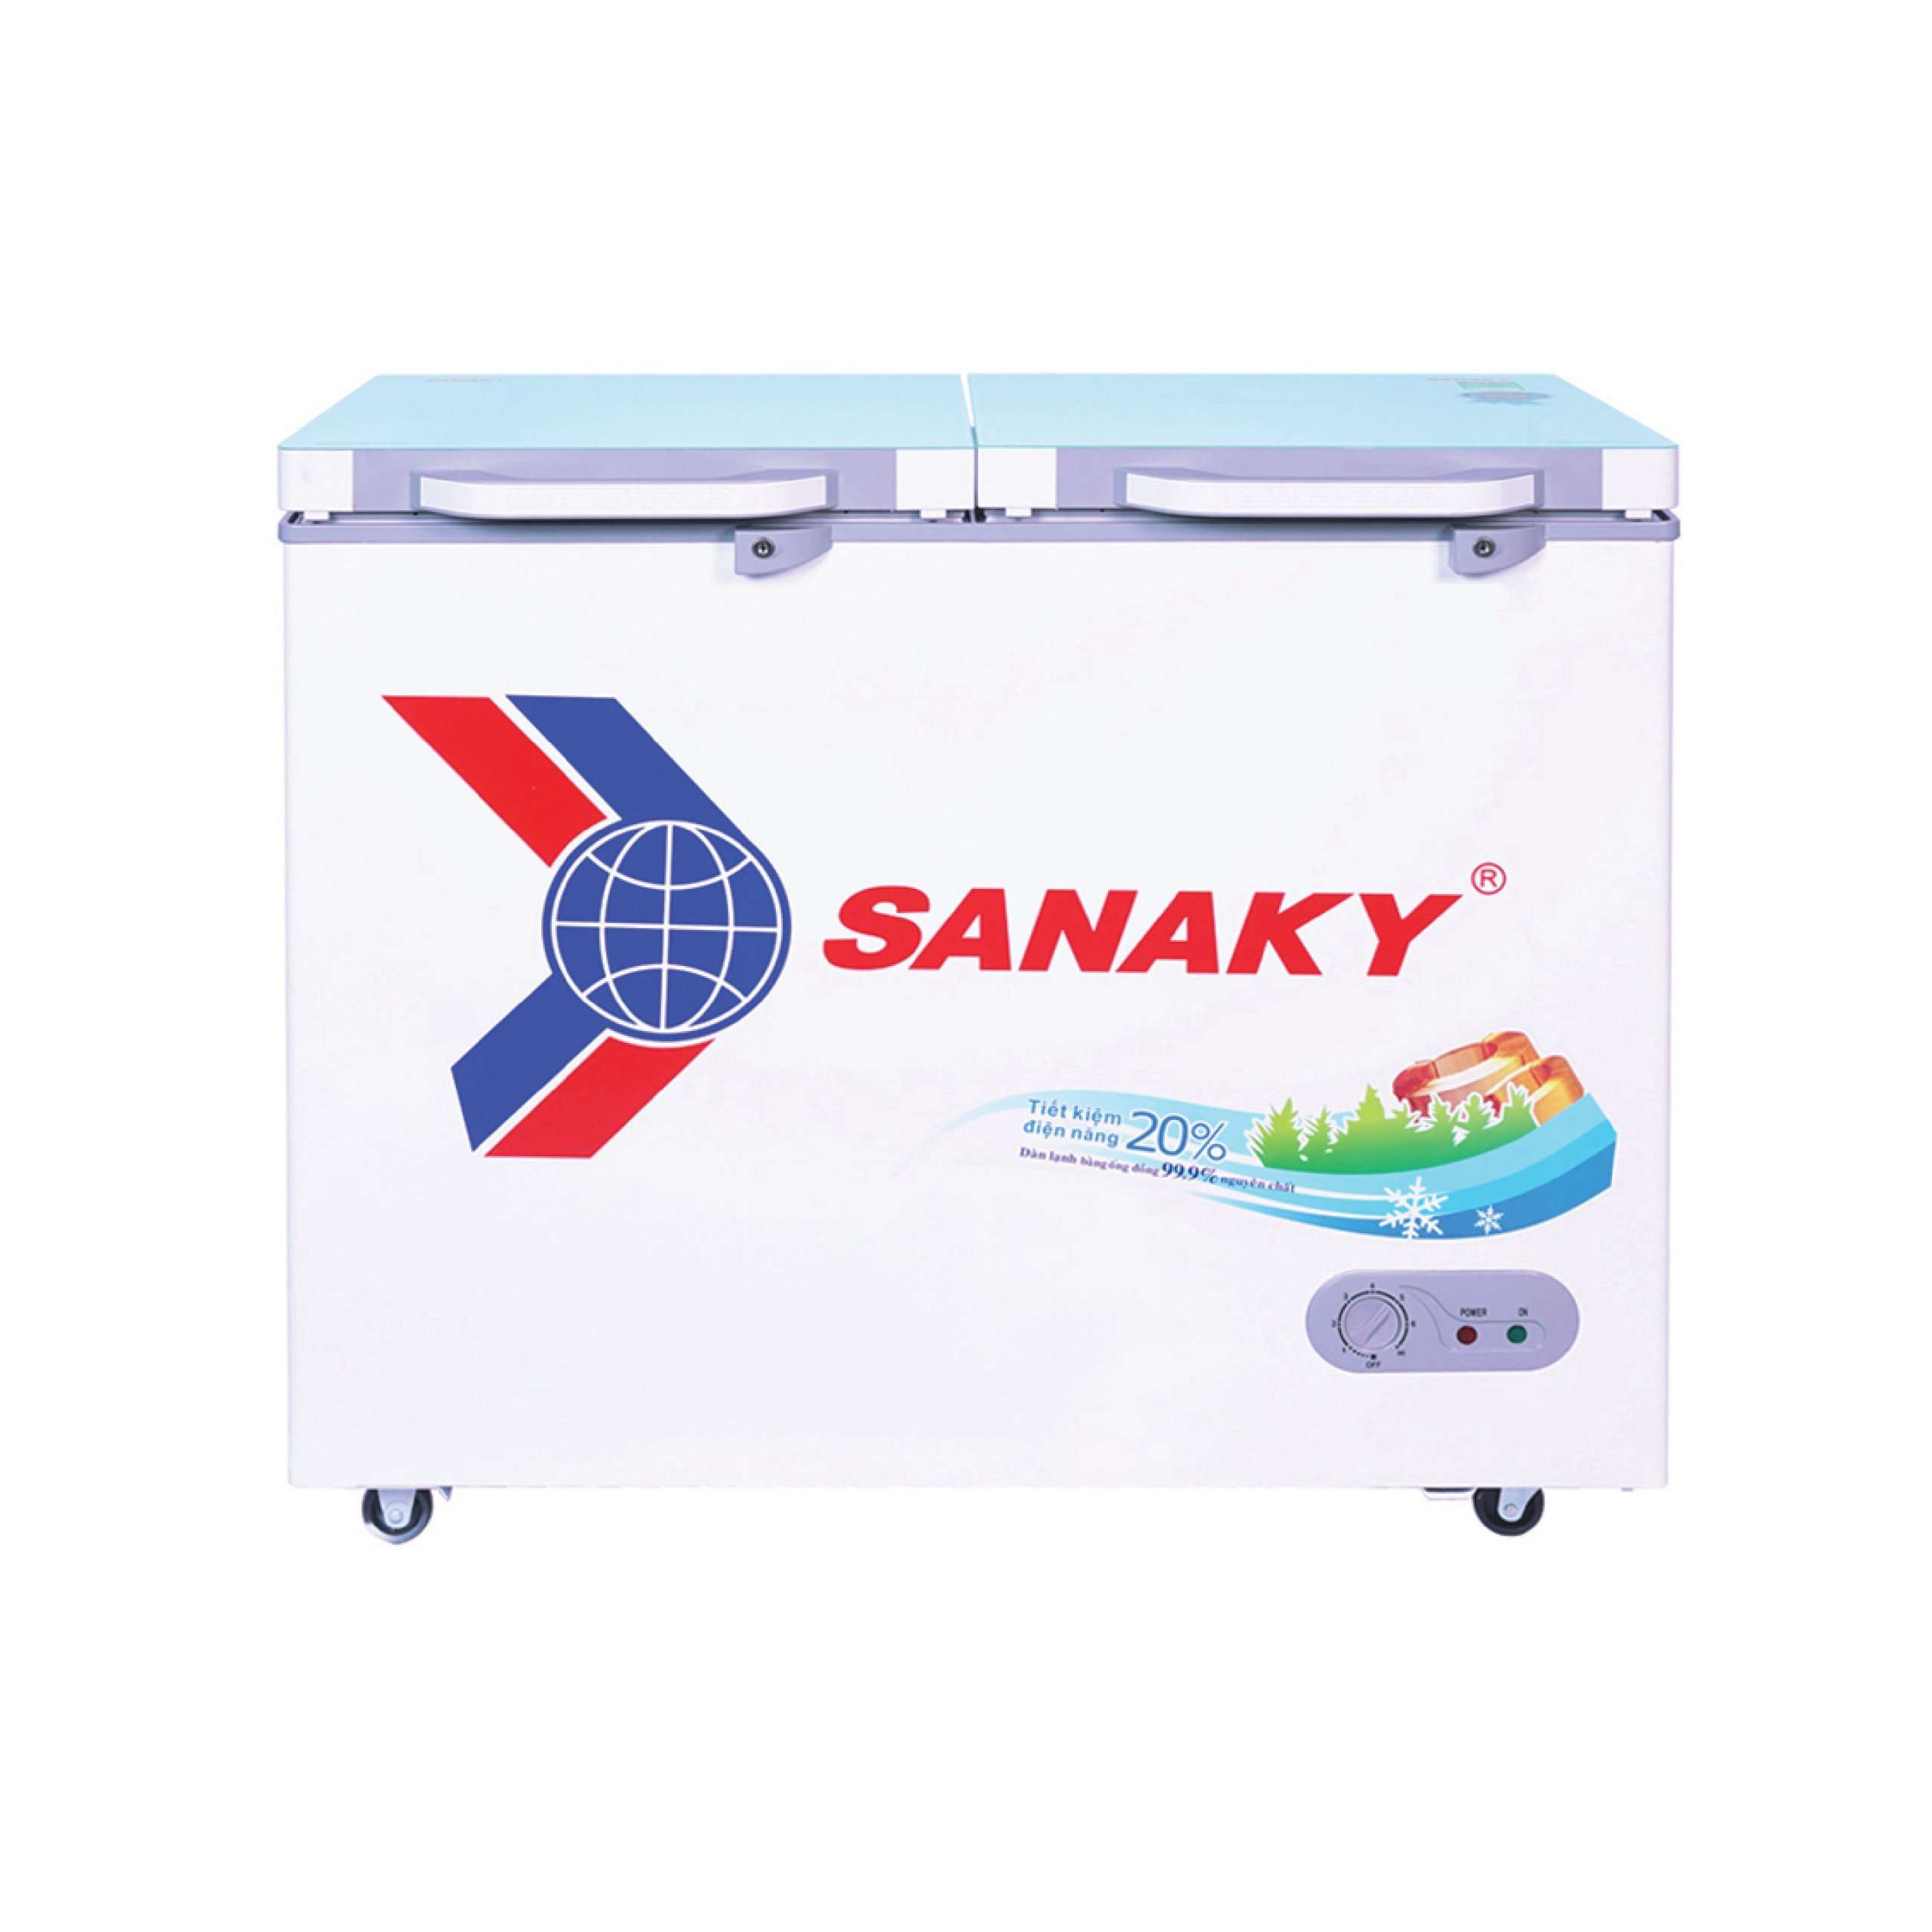 Tủ đông Sanaky 235 lít VH-2899A2KD 1 ngăn - Chính hãng